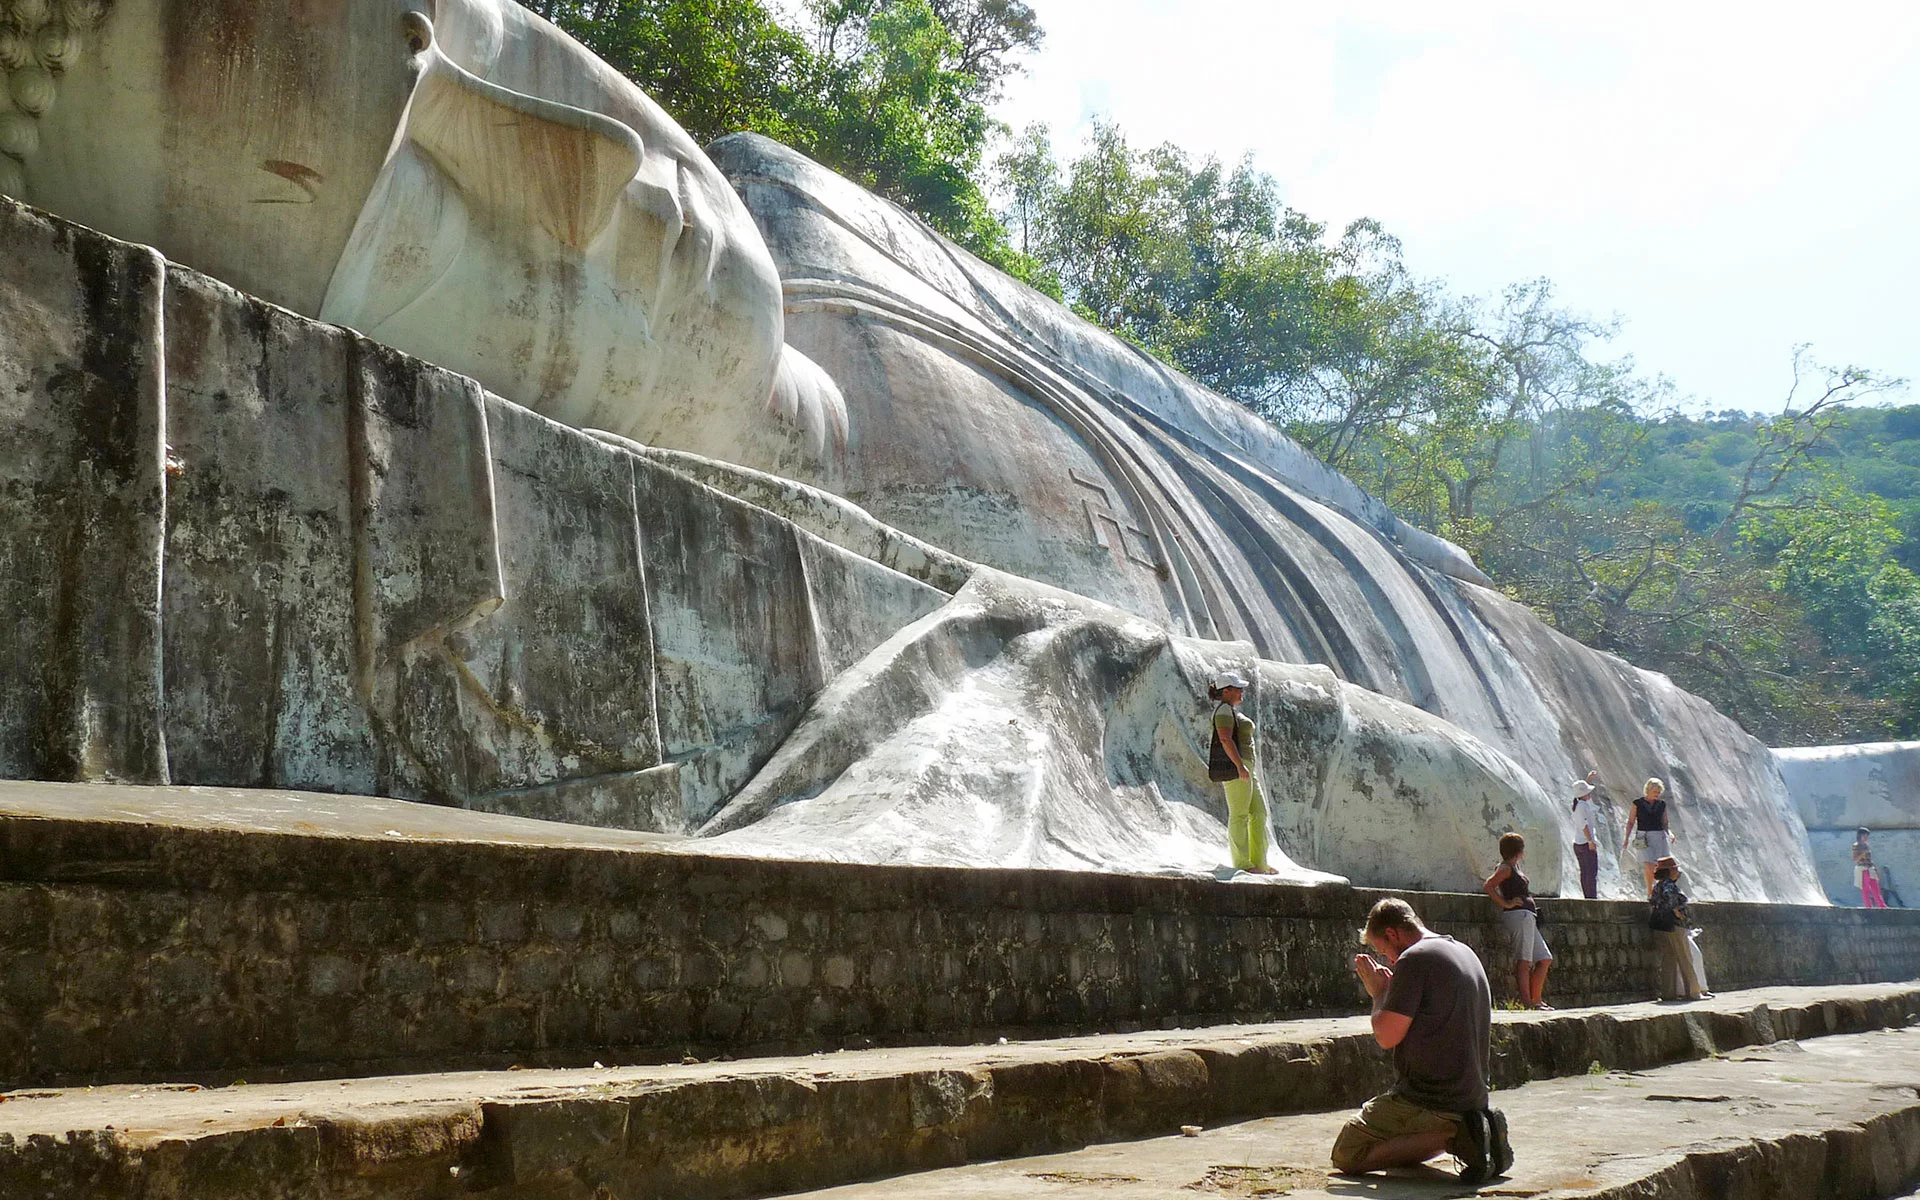 the biggest reclining Buddha statue of Vietnam in Ta Cu Mountain